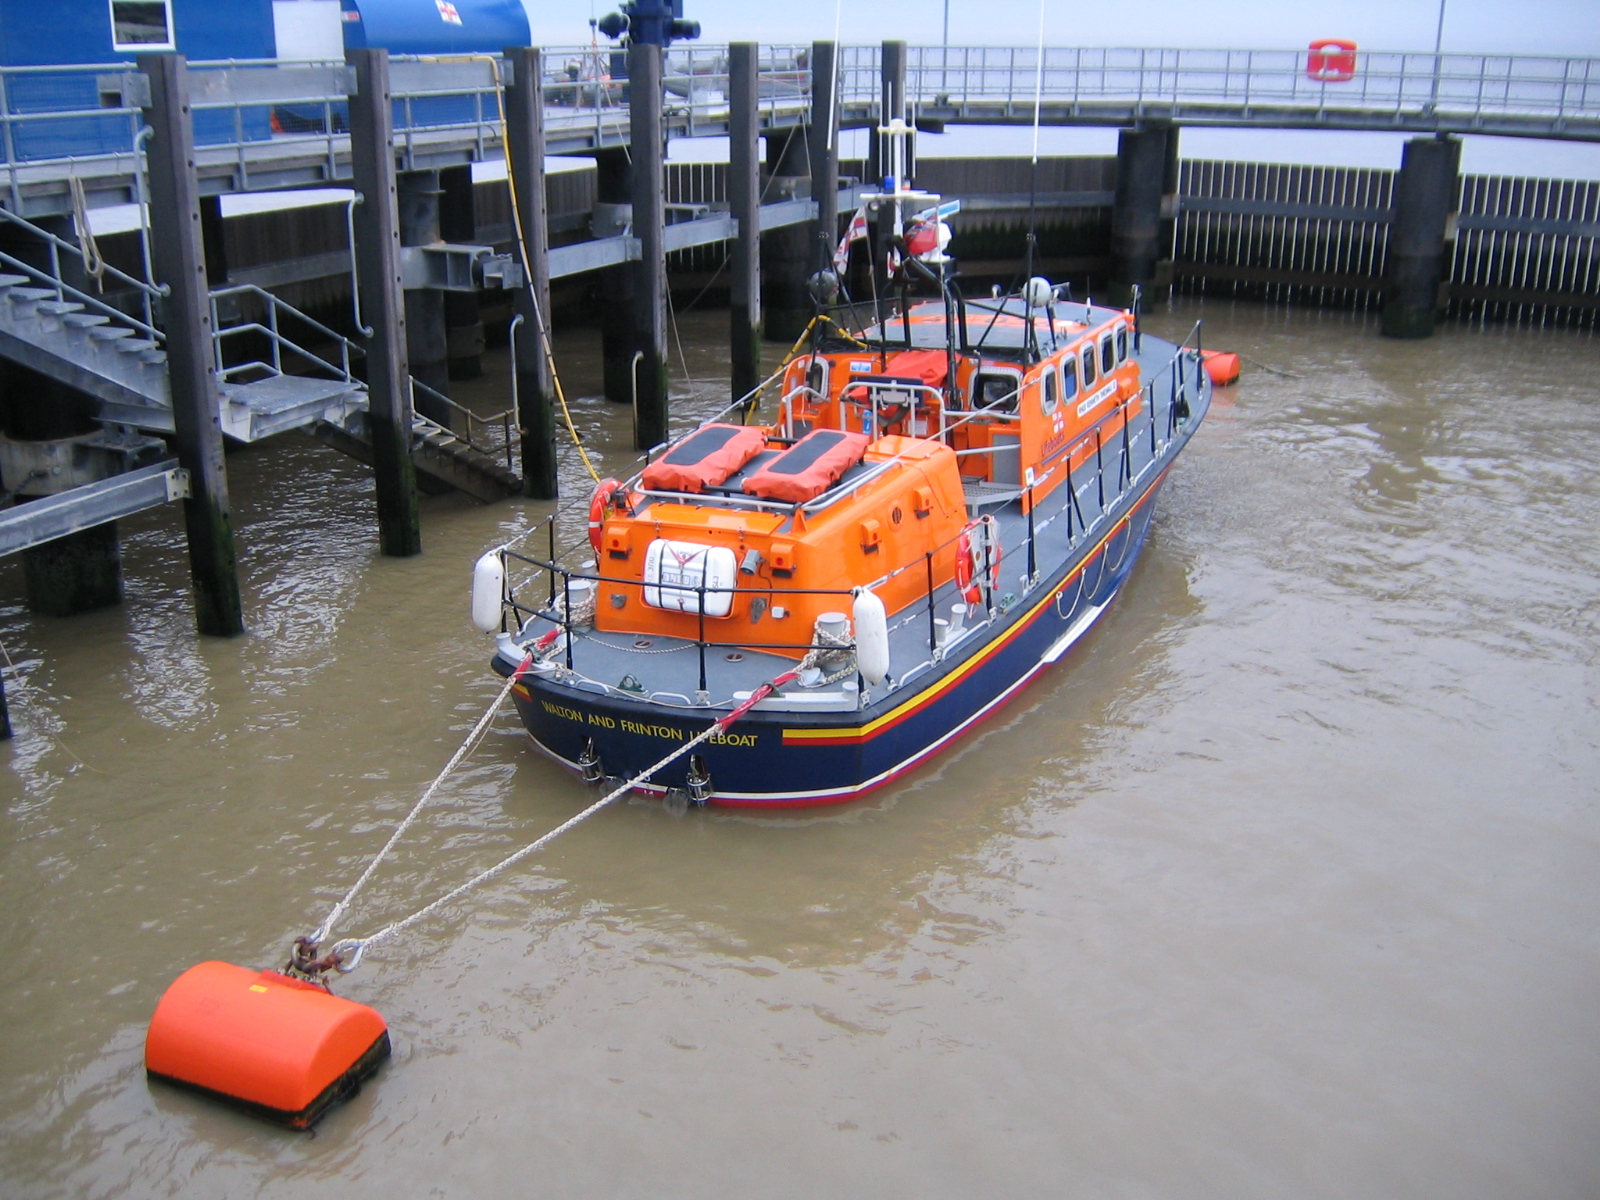 Walton and Frinton Lifeboat